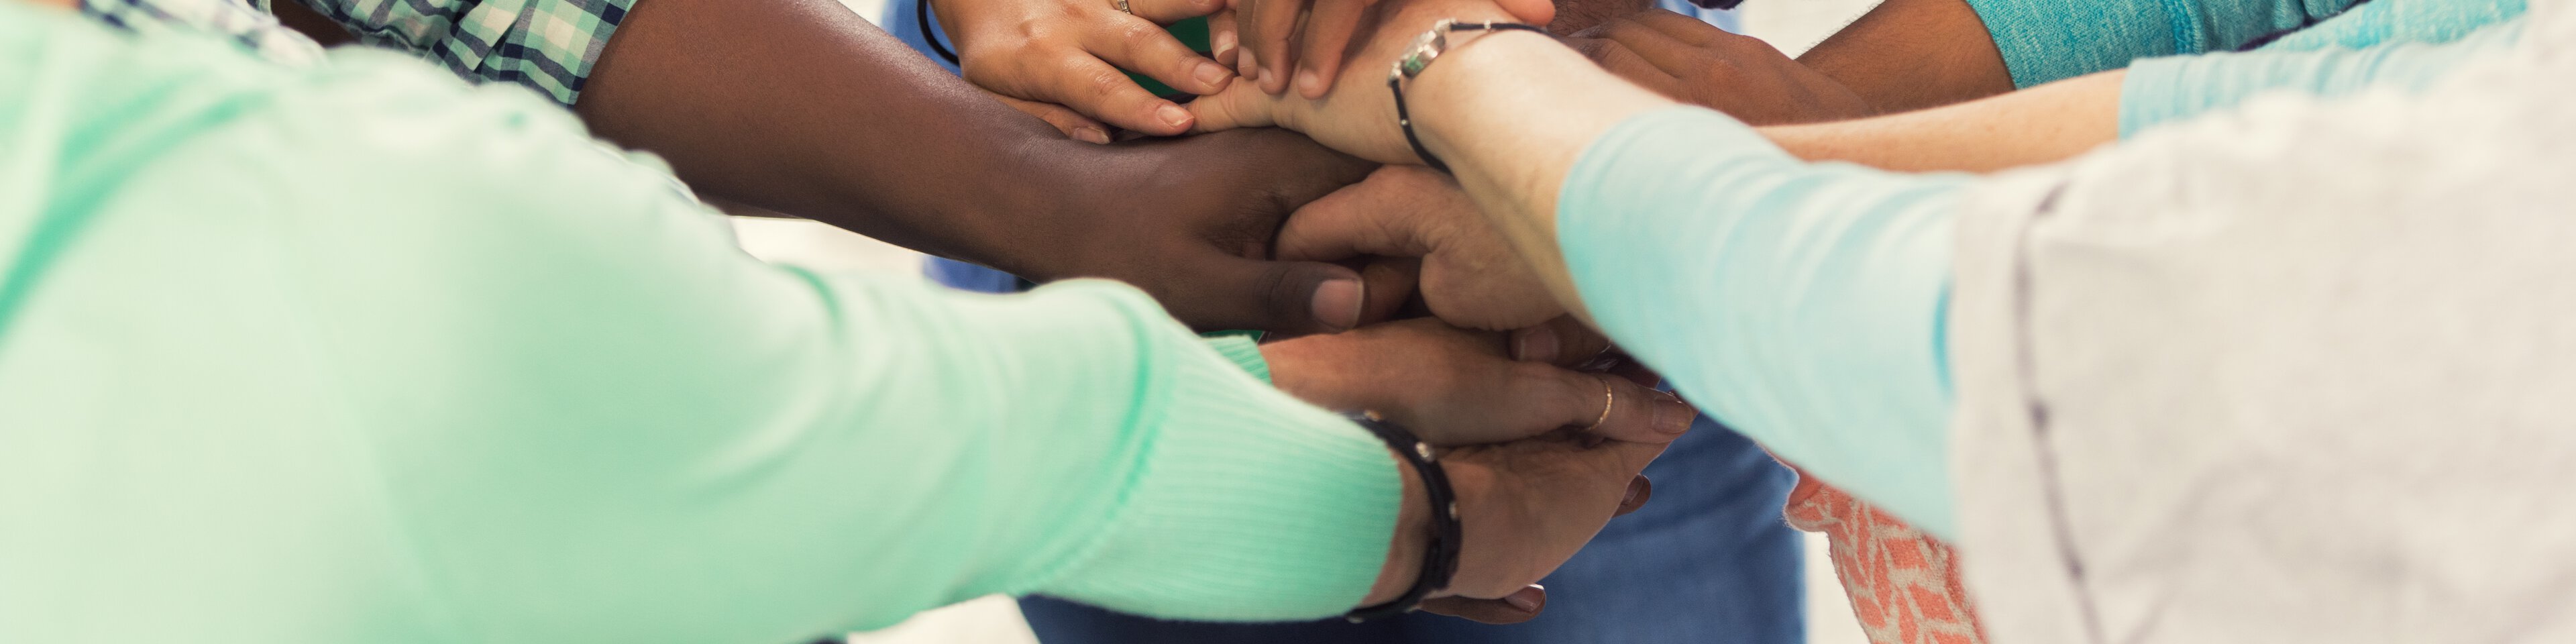 Junge Menschen legen Ihre Hände beim Freiwilligendienst aufeinander | © Steve Debenport/Getty Images